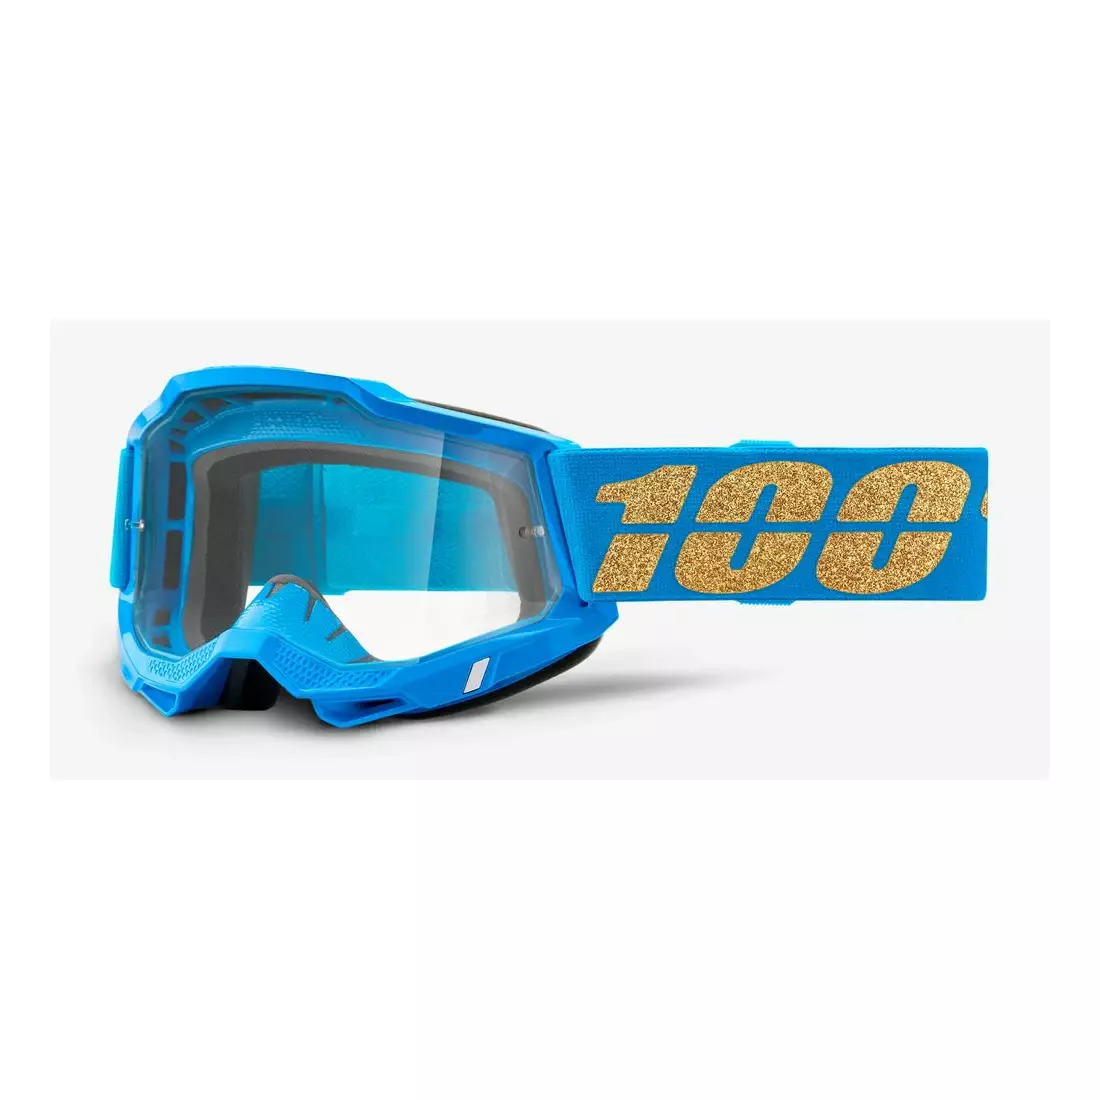 100% ochelari de protecție pentru bicicletă ACCURI 2 (lentile transparente anti-ceață, LT 88%-92%) waterloo 